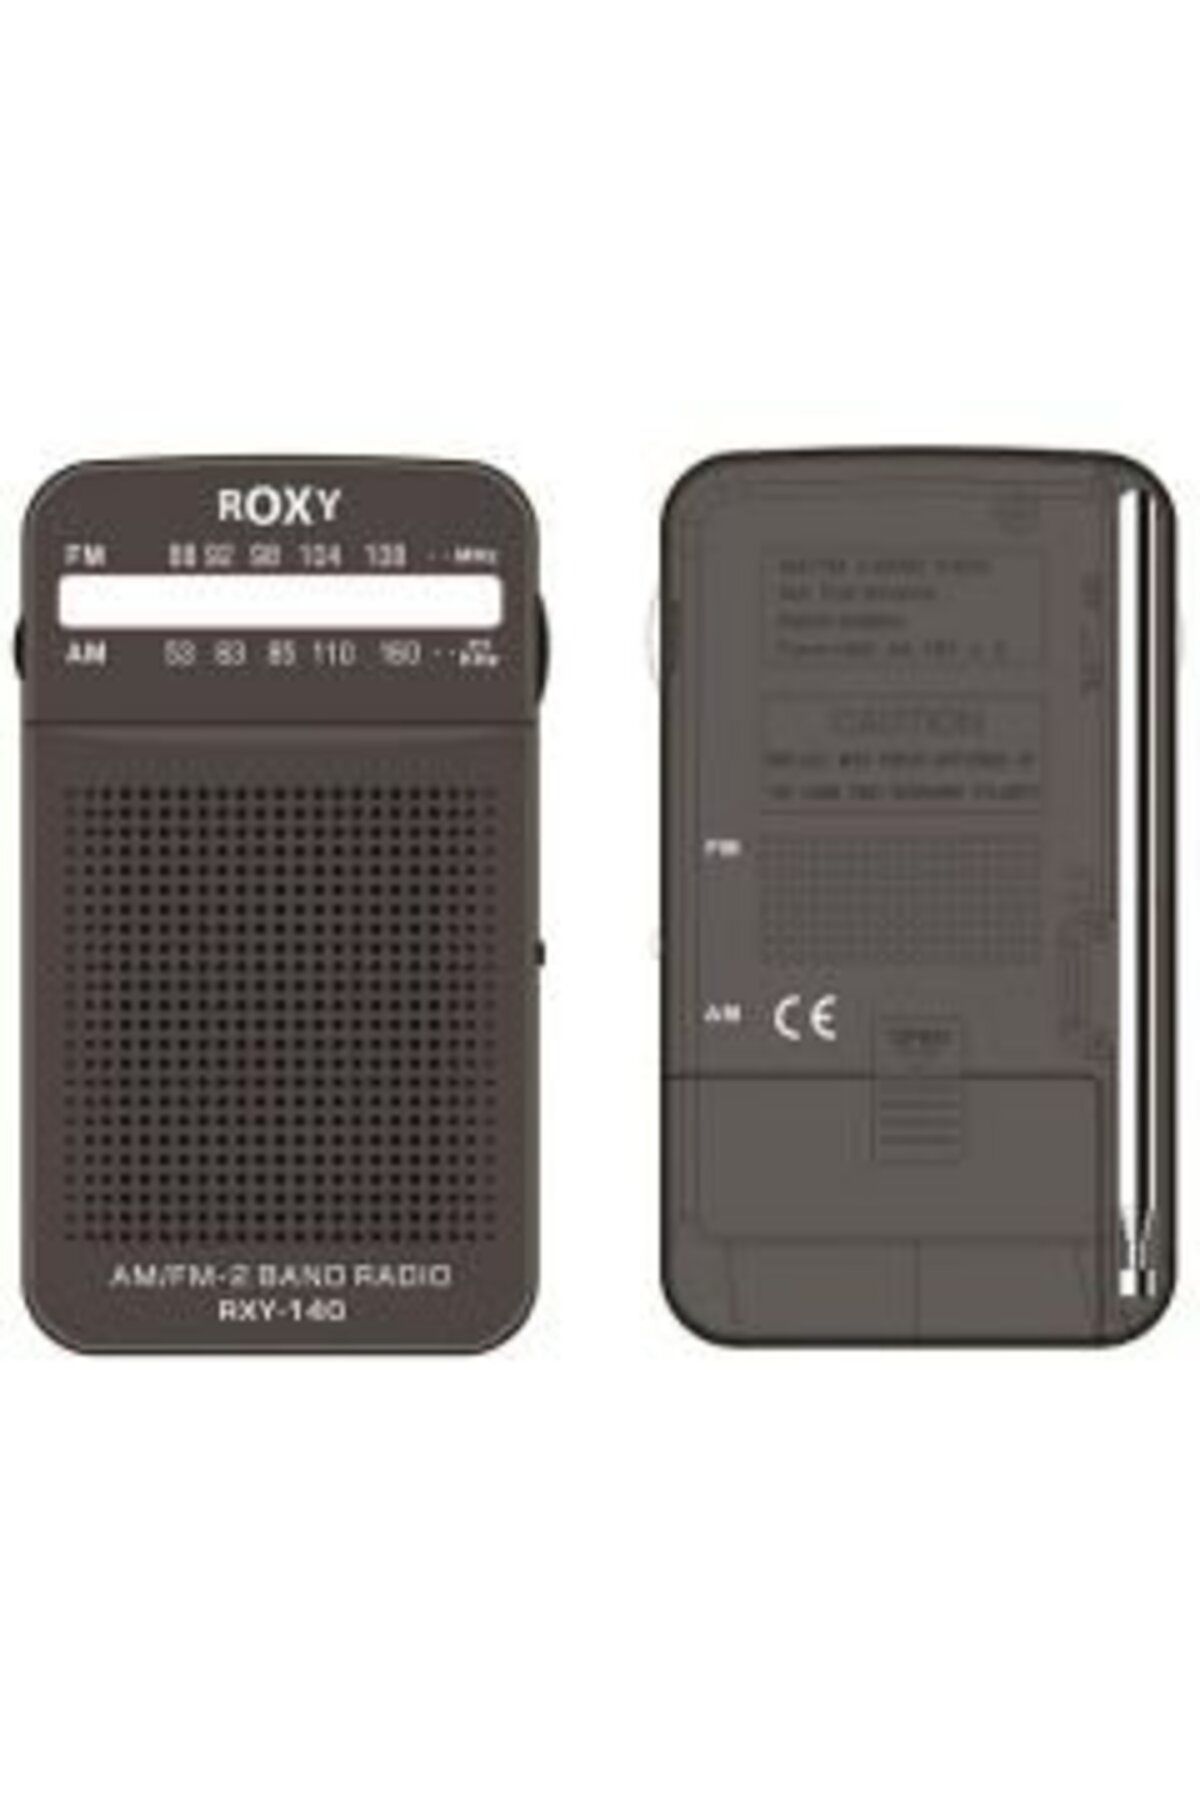 LAMFER CLZ192 Roxy Rxy-140 Fm Cep Radyosu